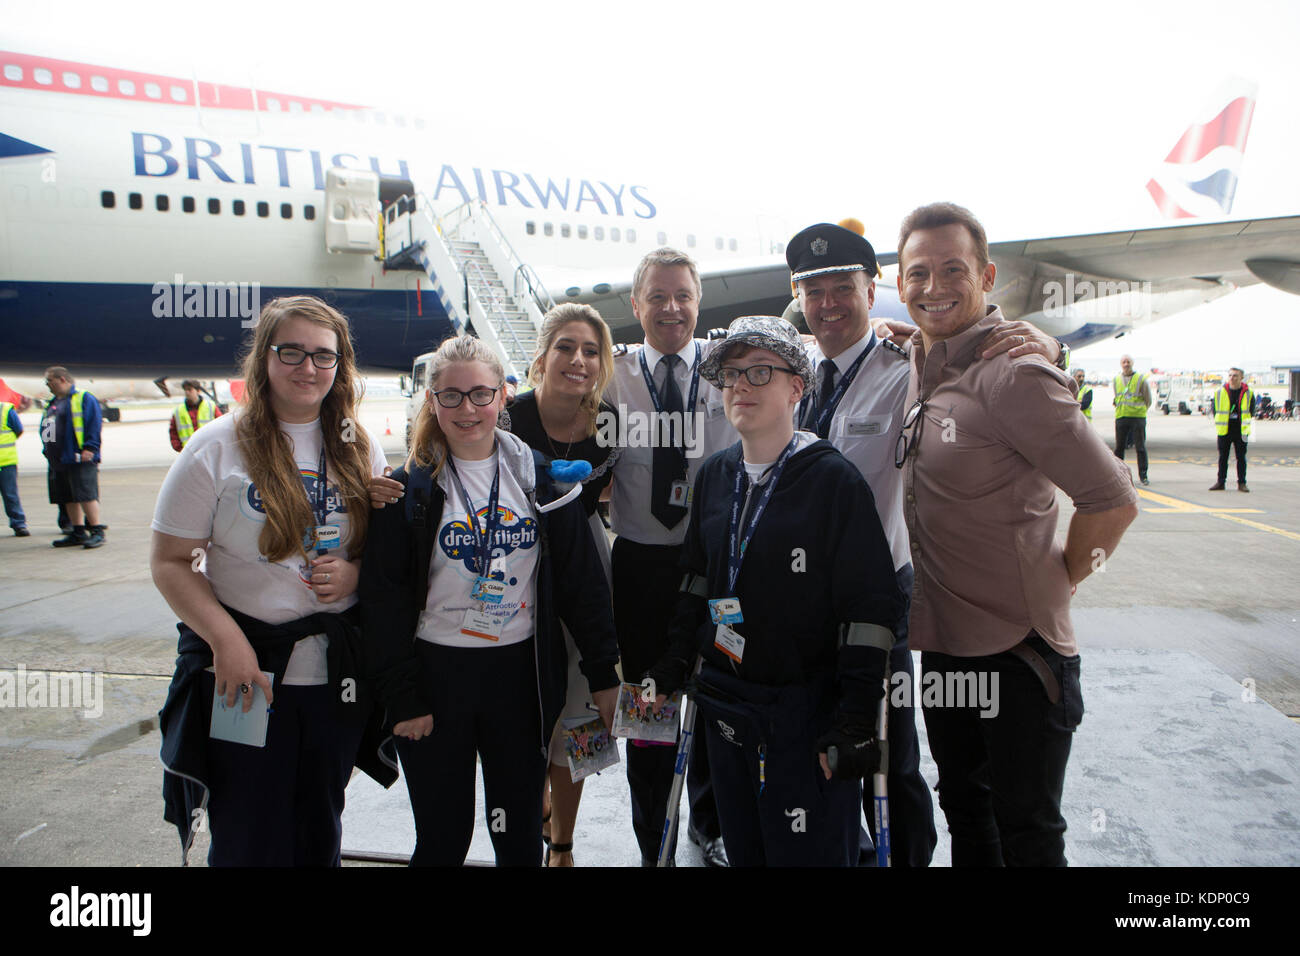 Joe Swash und Stacey soloman Welle aus Kinder auf dreamflight Reise in den USA vom Flughafen Heathrow nach Florida. Stockfoto